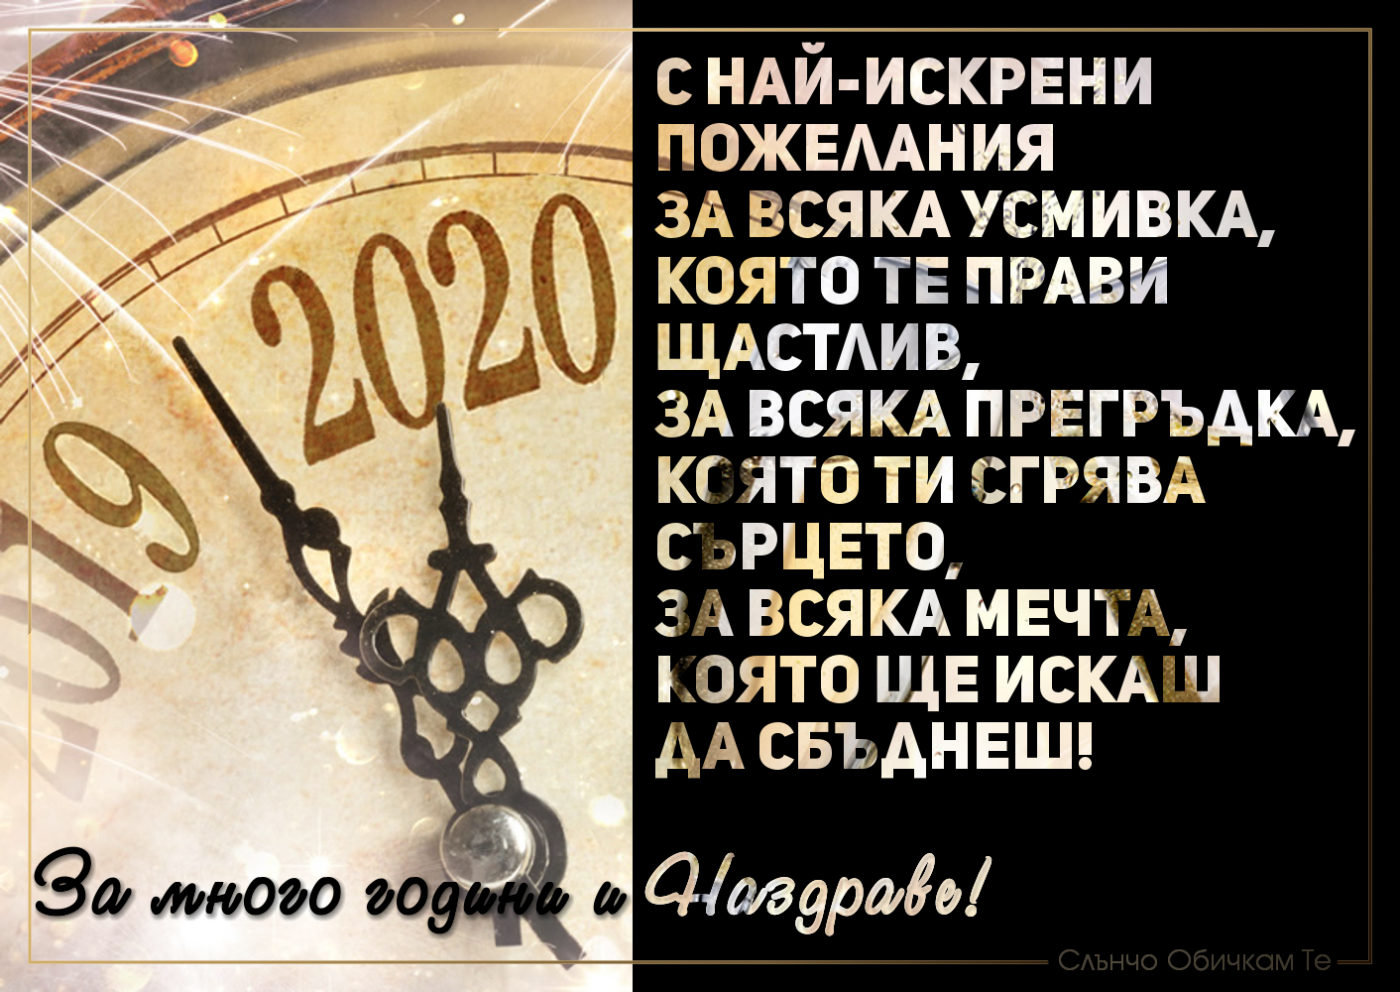 Поздрави, картички, пожелания за нова година 2020 - С най-искрени пожелания - За много години и Наздраве! - Честита Нова Година 2020